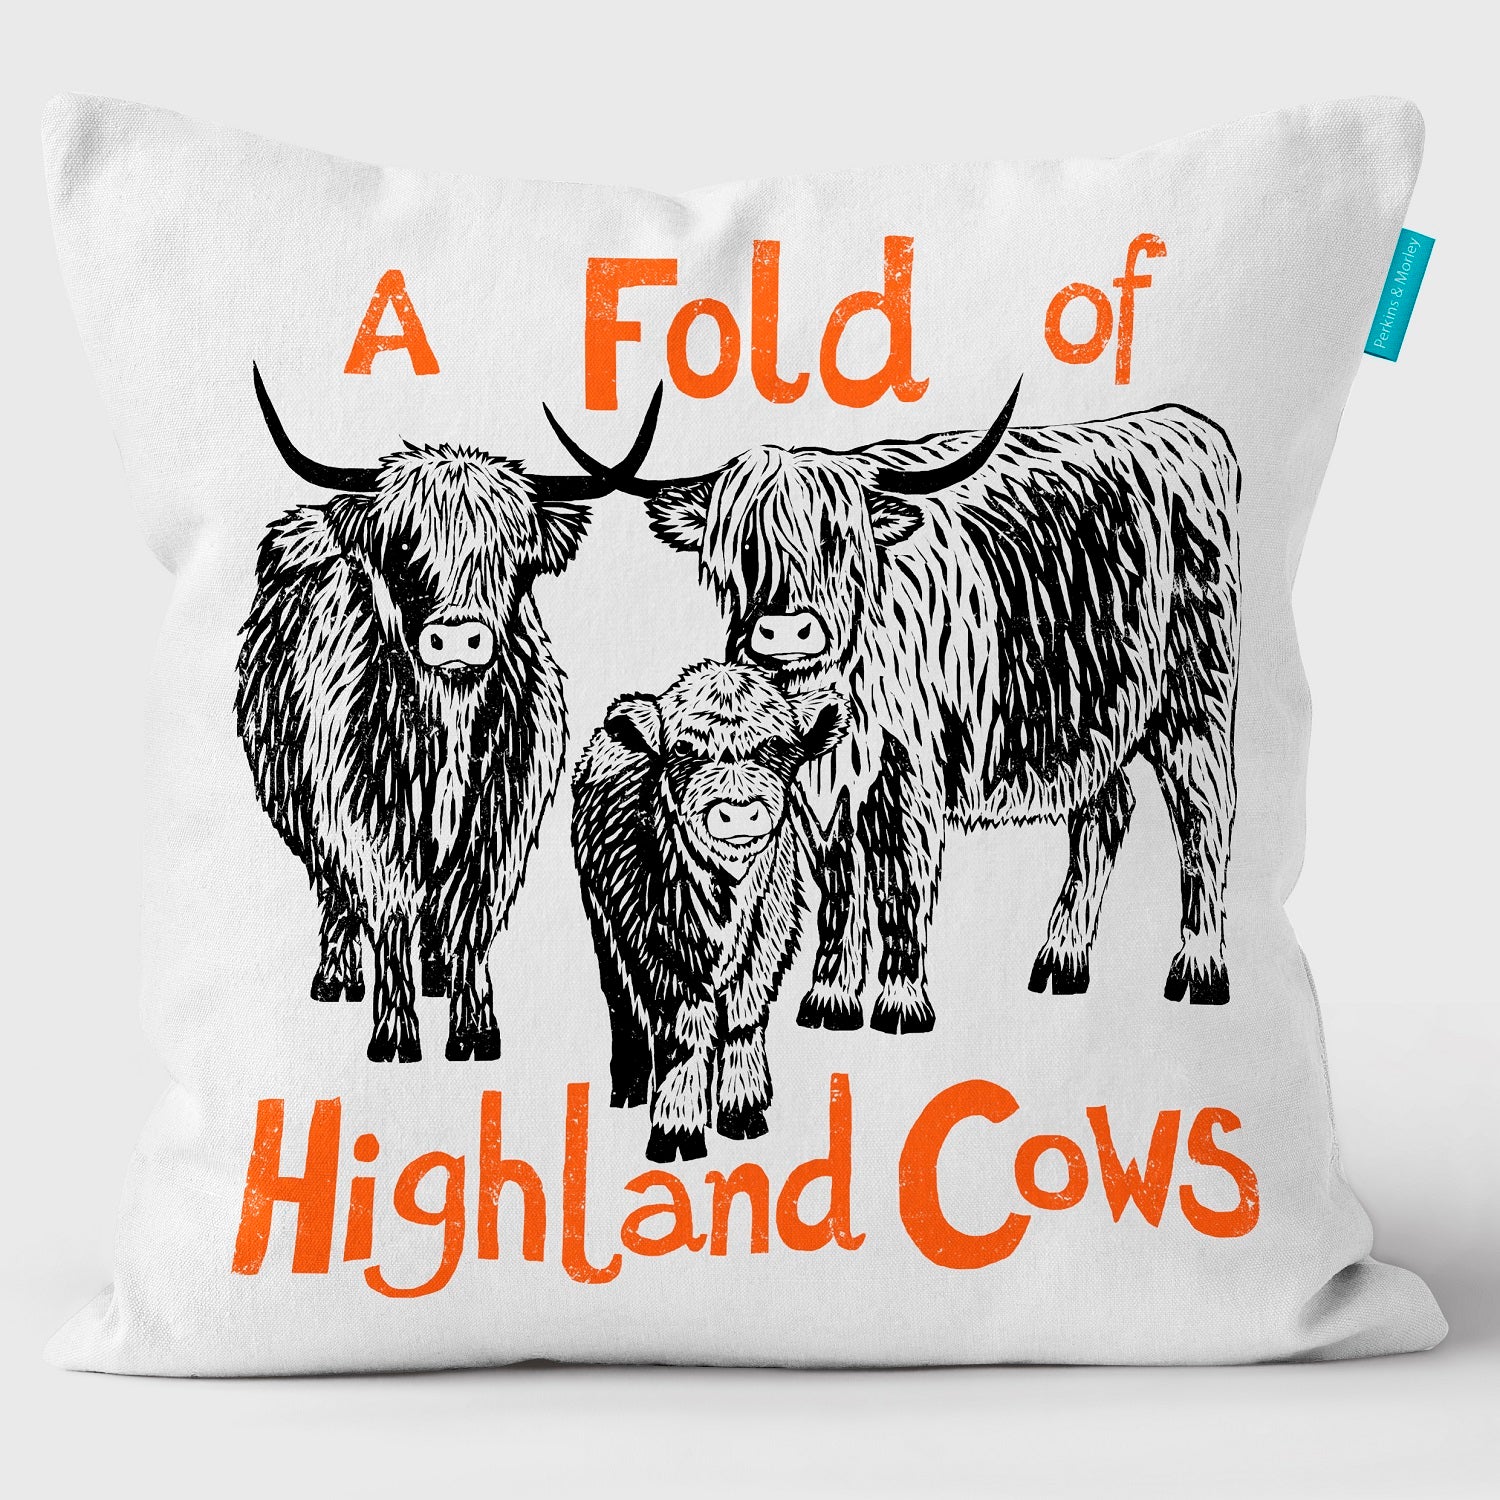 Fold of Highland Cows - Collective Noun Cushion